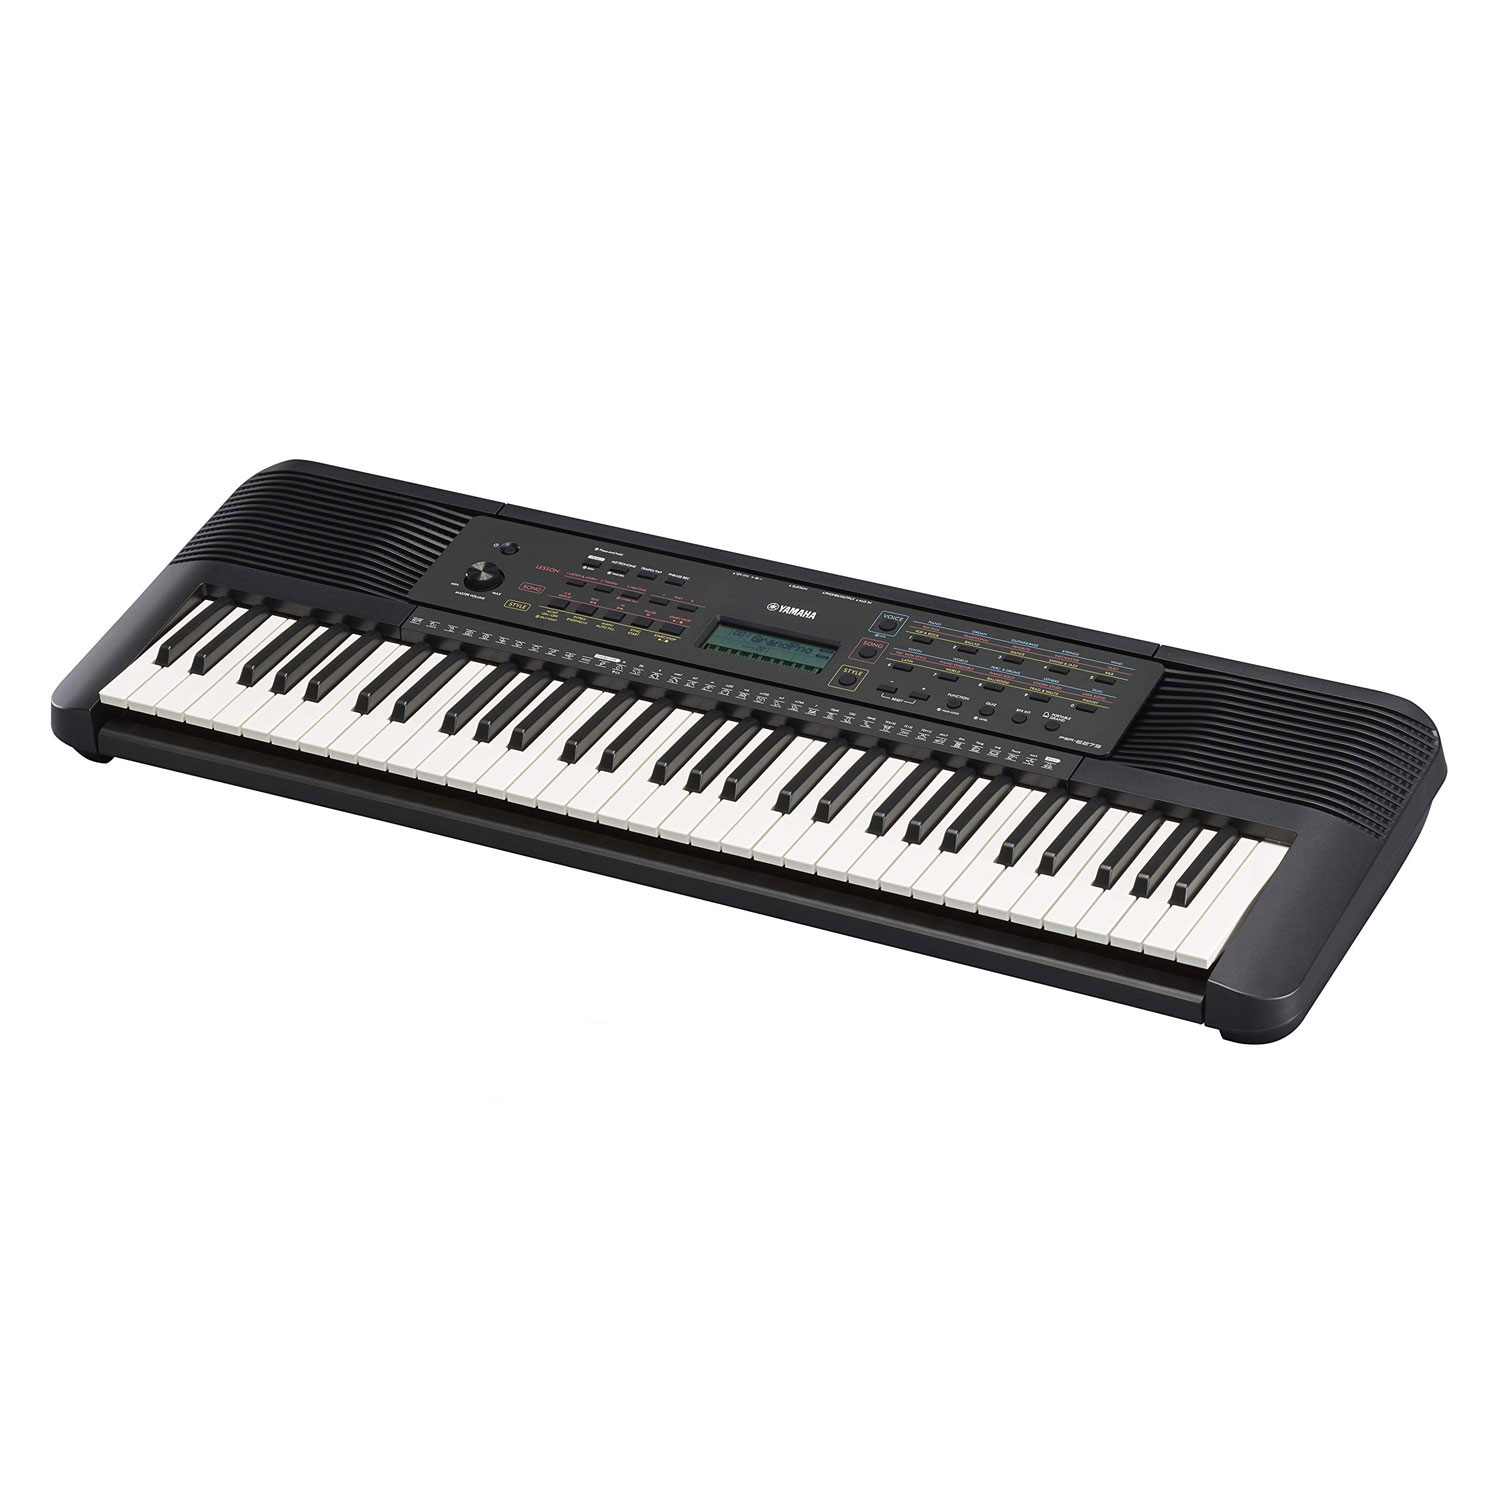 Bộ Đàn Organ Yamaha PSR-E273 - Đàn, Chân, Bao, Nguồn Keyboard PSR E273 Chính Hãng - Có tem chống hàng giả Bộ CA - Kèm Móng Gẩy DreamMaker